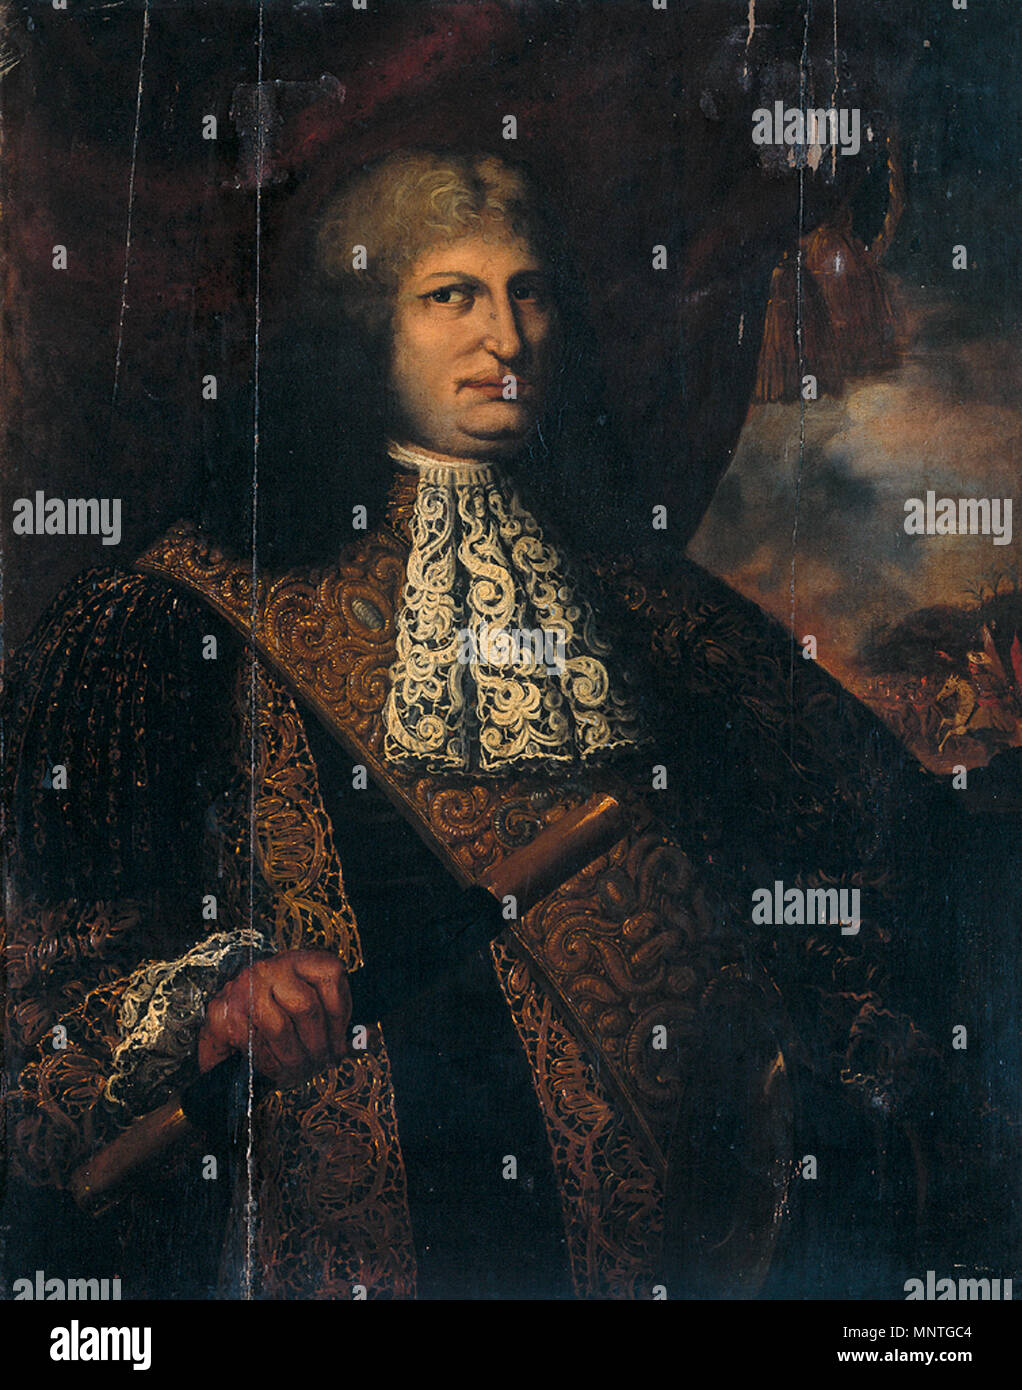 Cornelis Speelman (1628-84). Gouverneur - Allgemein (1681-84). Portrait von Cornelis Speelman, Generalgouverneur von Niederländisch-ostindien von 1681 bis 1684. Teil der Gouverneure - allgemeine Reihe. zwischen 1680 und 1700. 1018 Portrait von Cornelis Speelman 001 Stockfoto